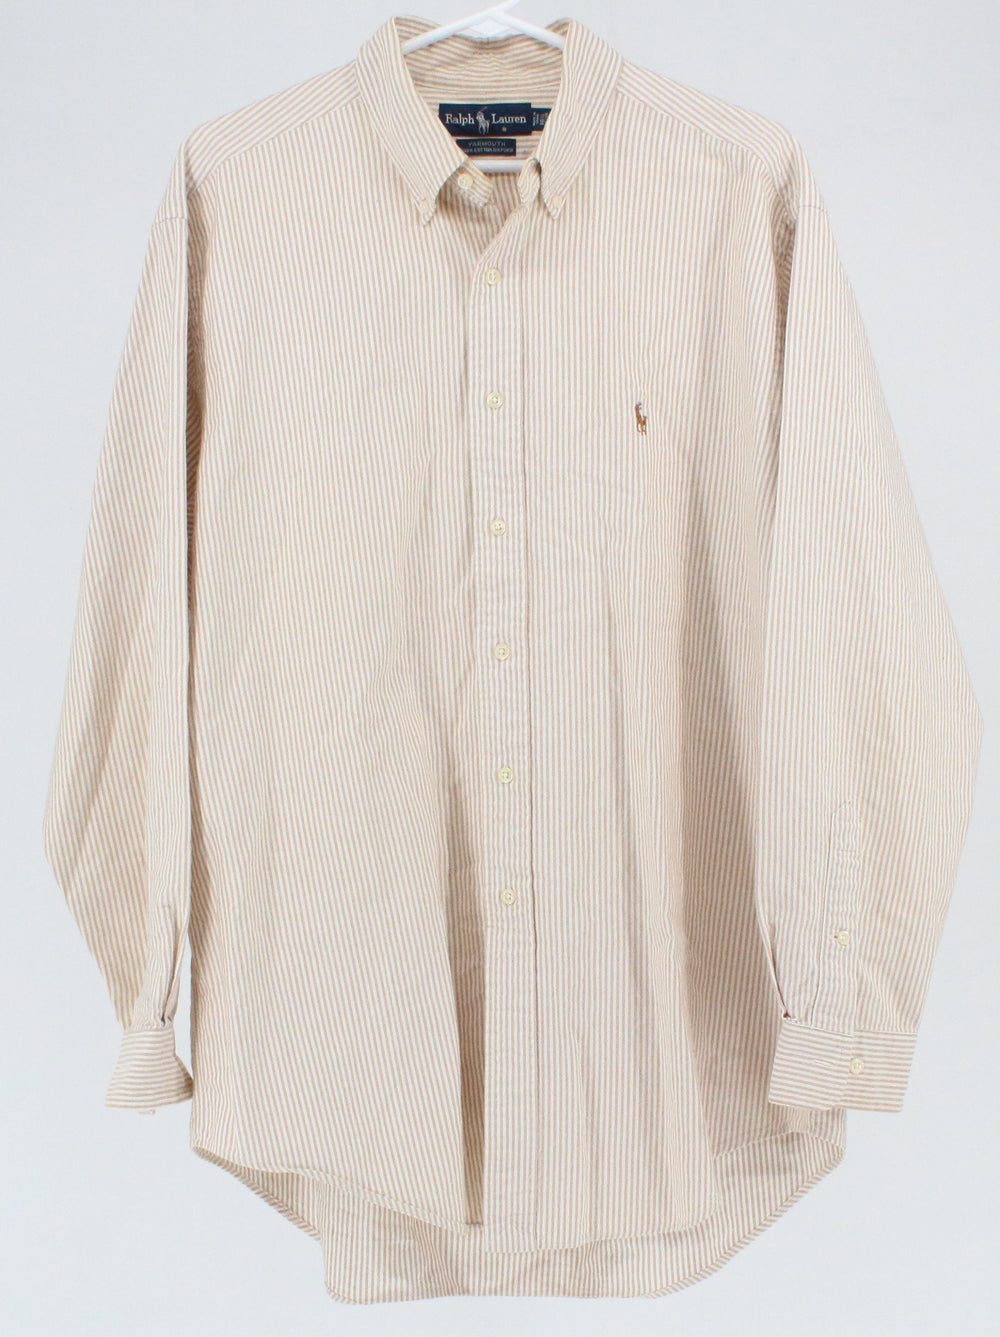 Ralph Lauren Beige & White Vertical Stripe Shirt